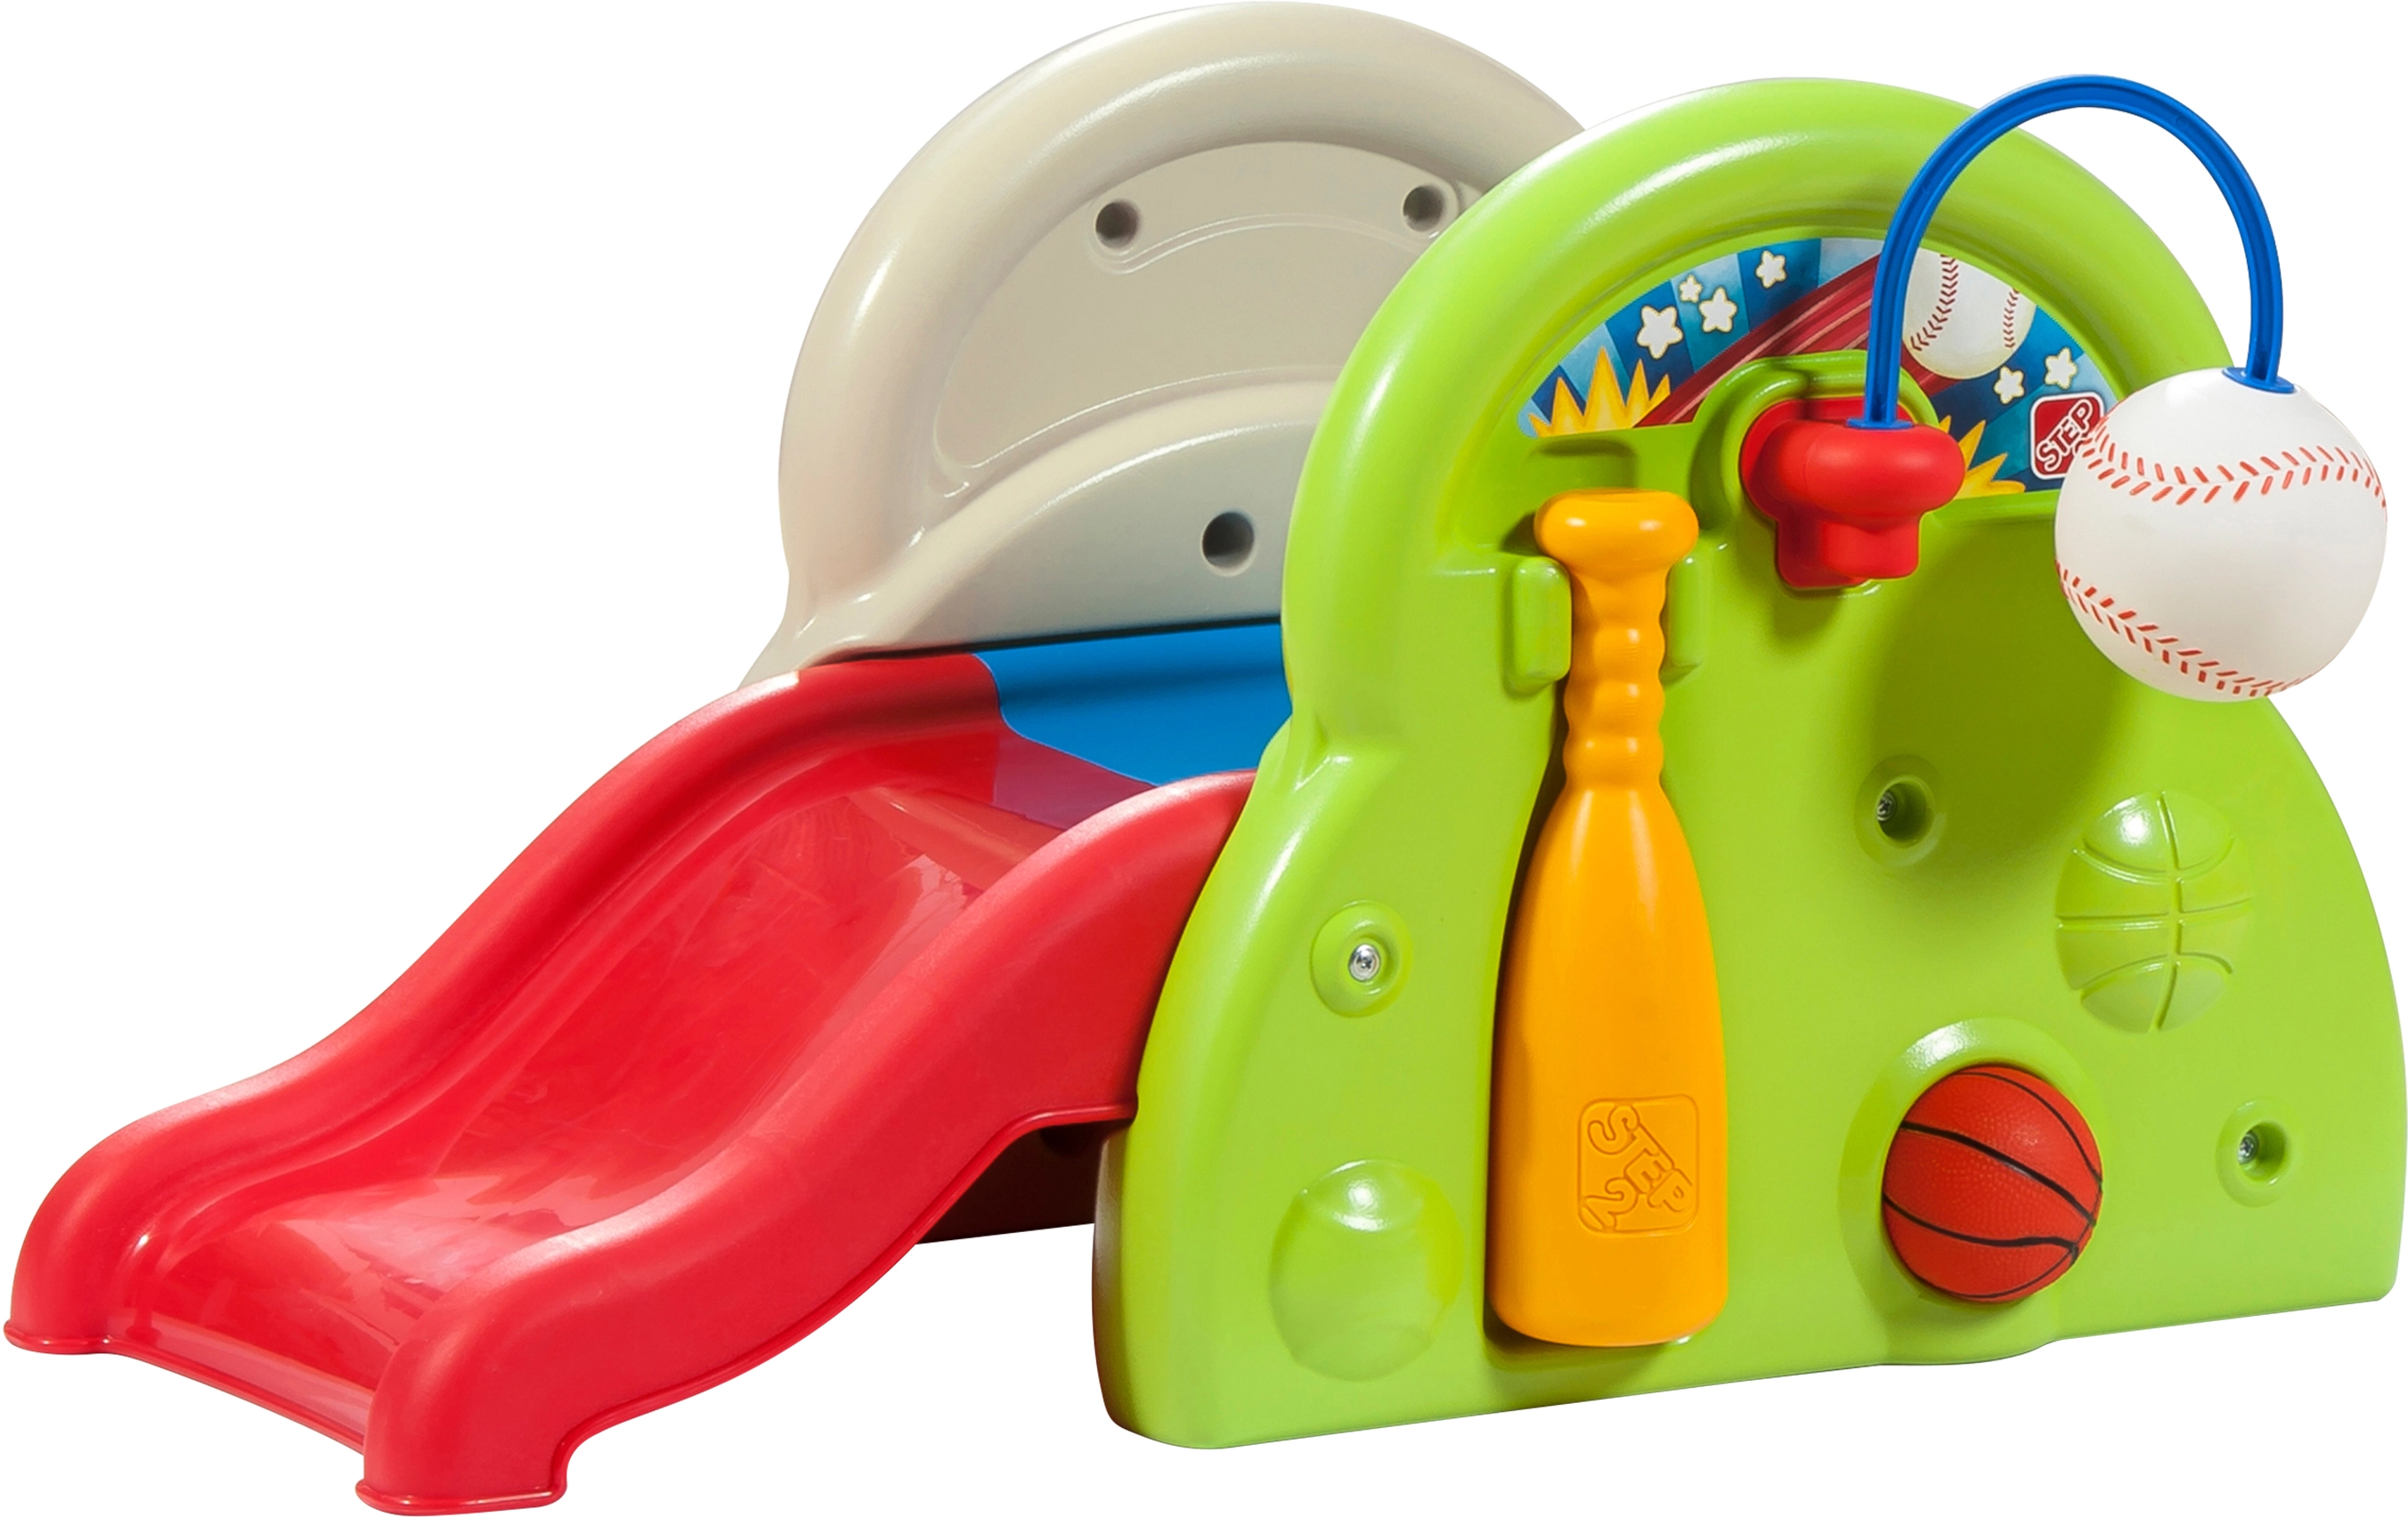 Step2 Spielzeug-Rutsche Sports-Tastic Activity Center kaufen bei OBI